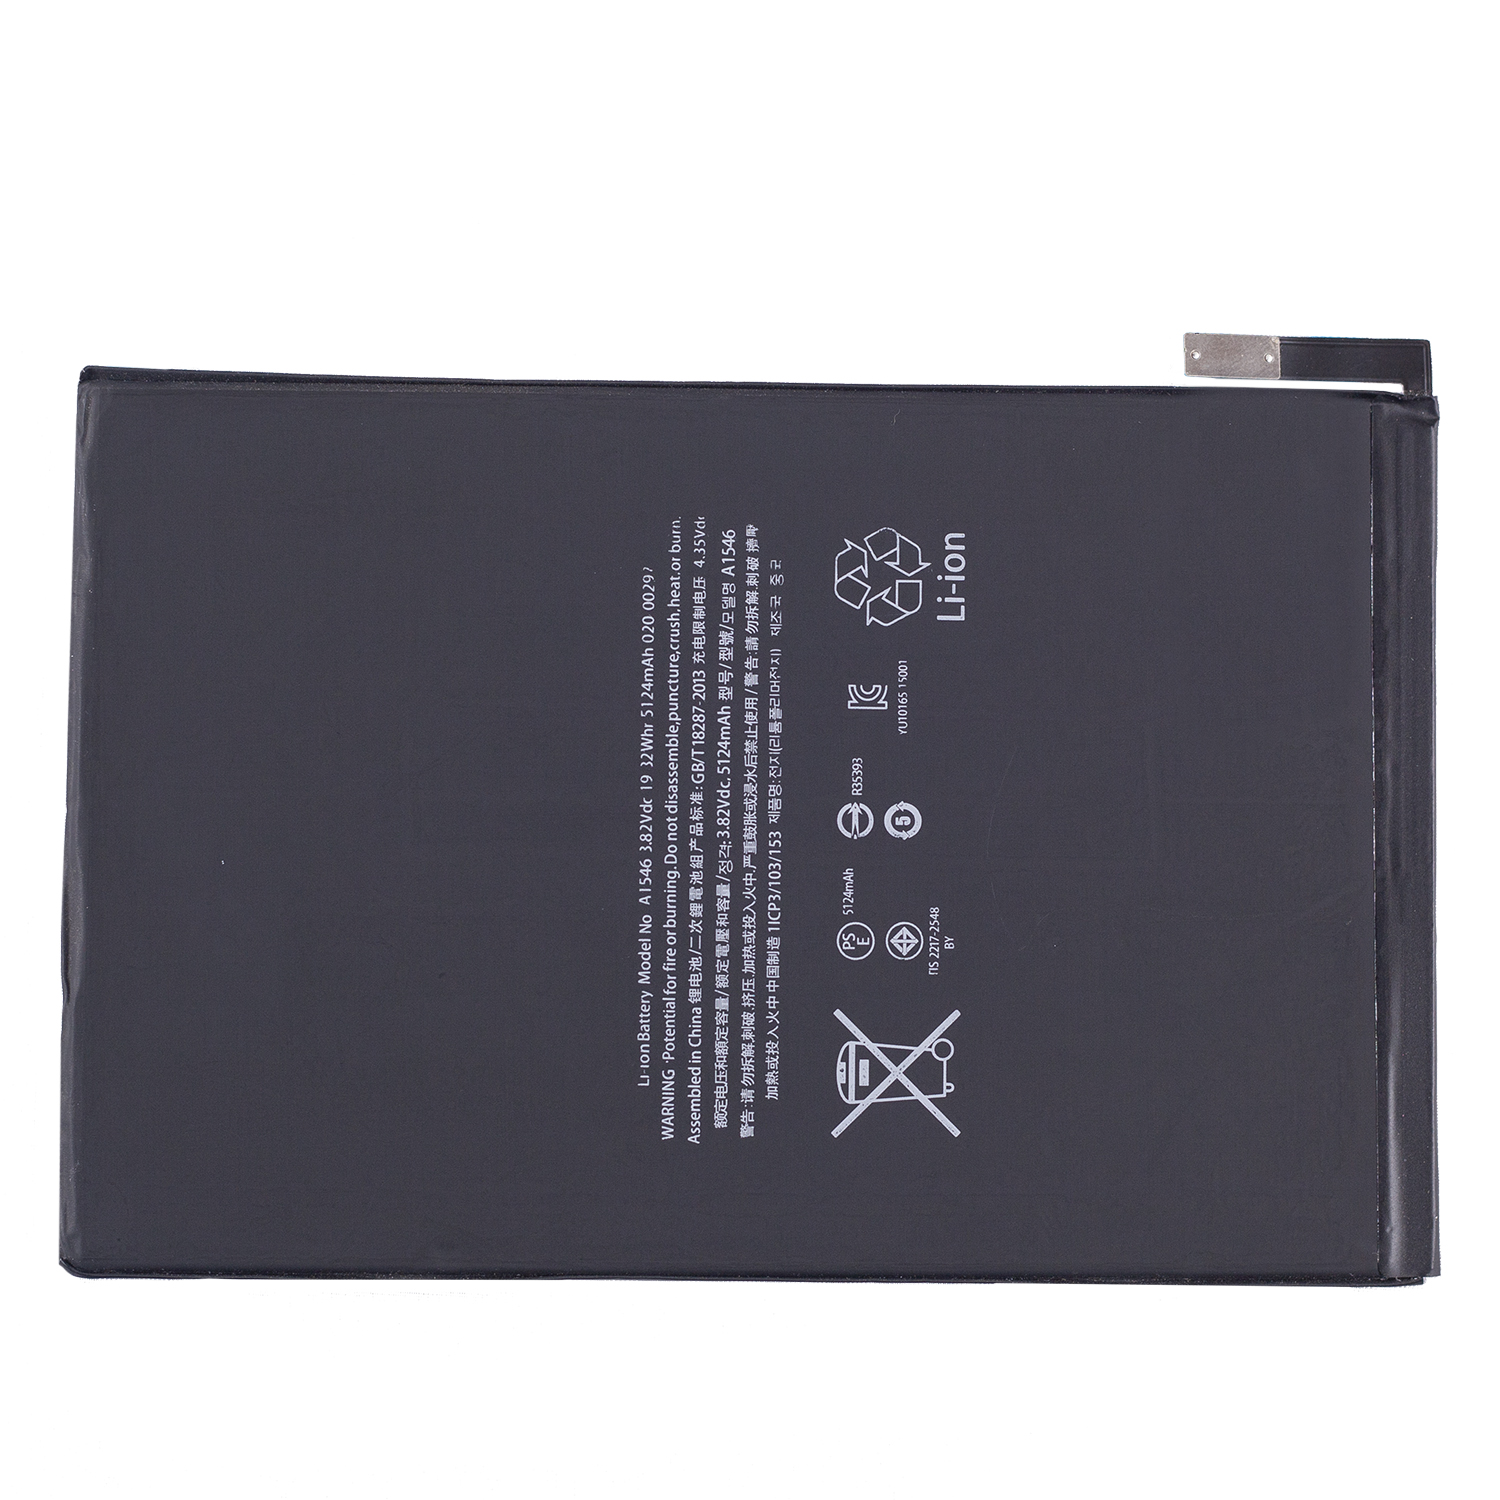 باتری تبلت مدل A1546 ظرفیت 5124 میلی آمپرساعت مناسب برای تبلت اپل iPad 5.2